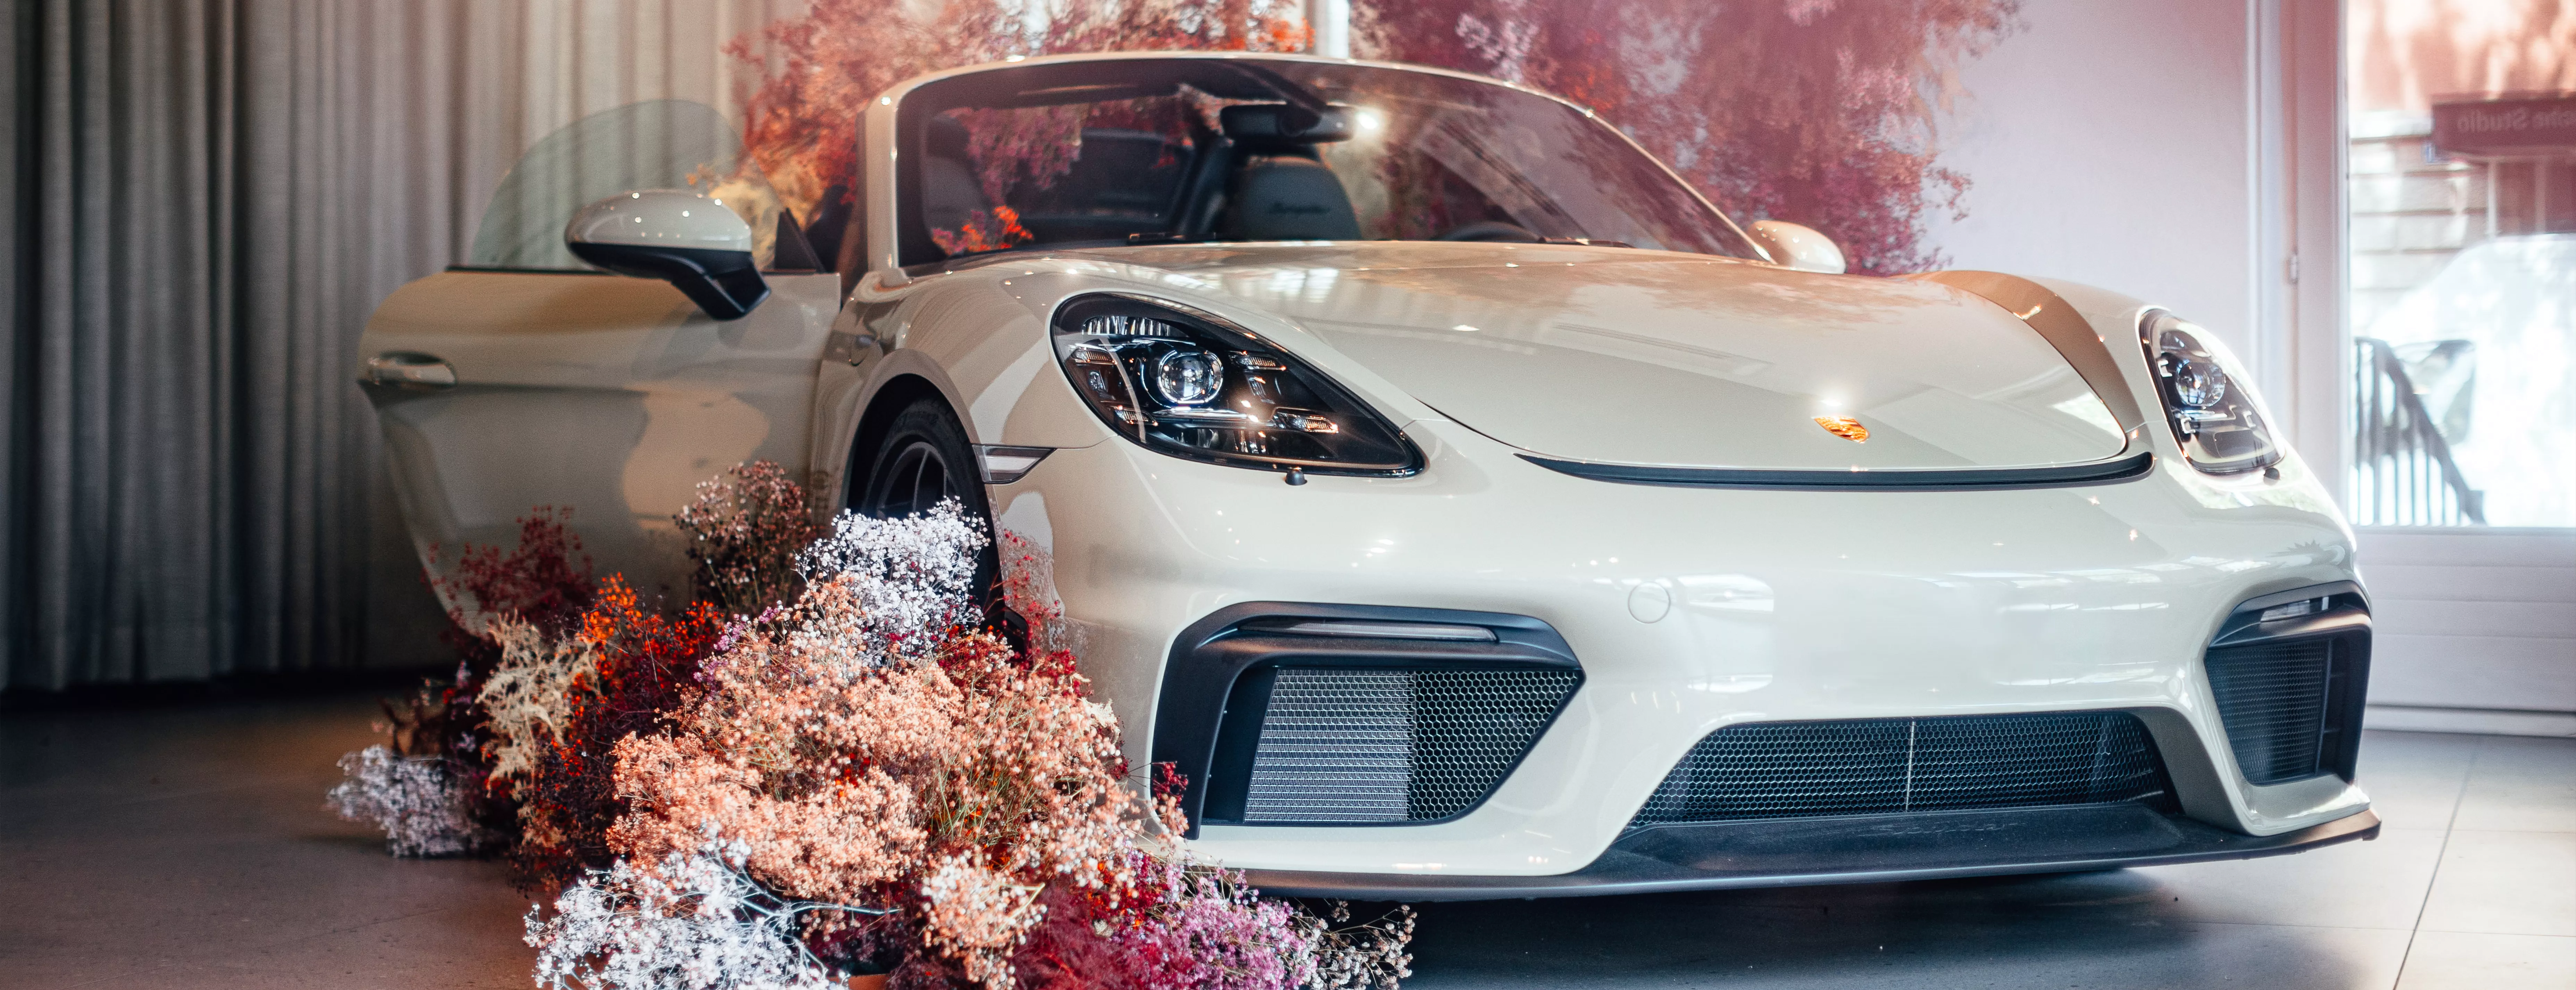 Индивидуальные условия на услуги сервиса для поклонниц марки Porsche.